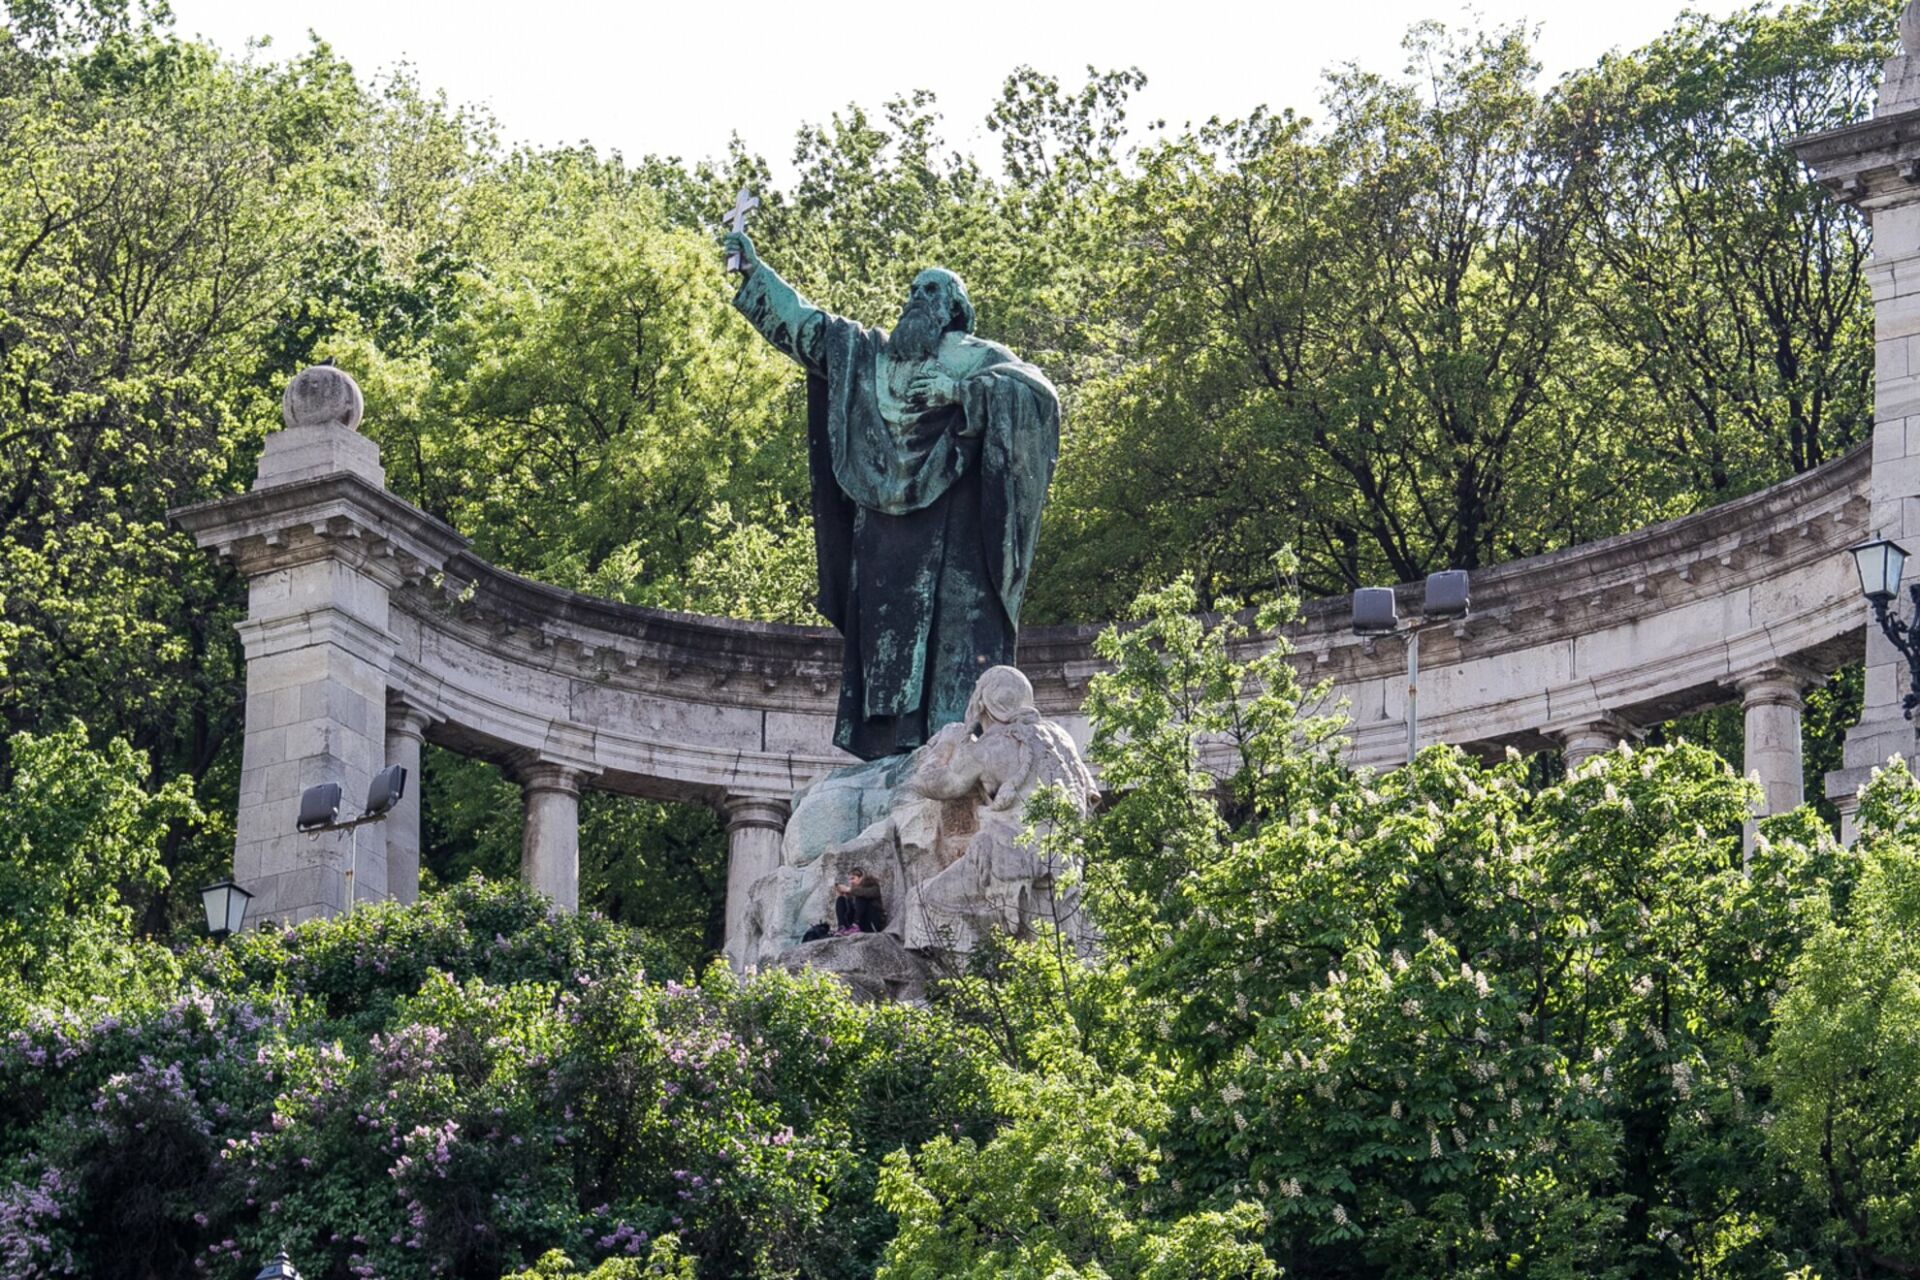 Szent Gellért Monument, marking the spot of Saint Gellert’s death in Budapest 